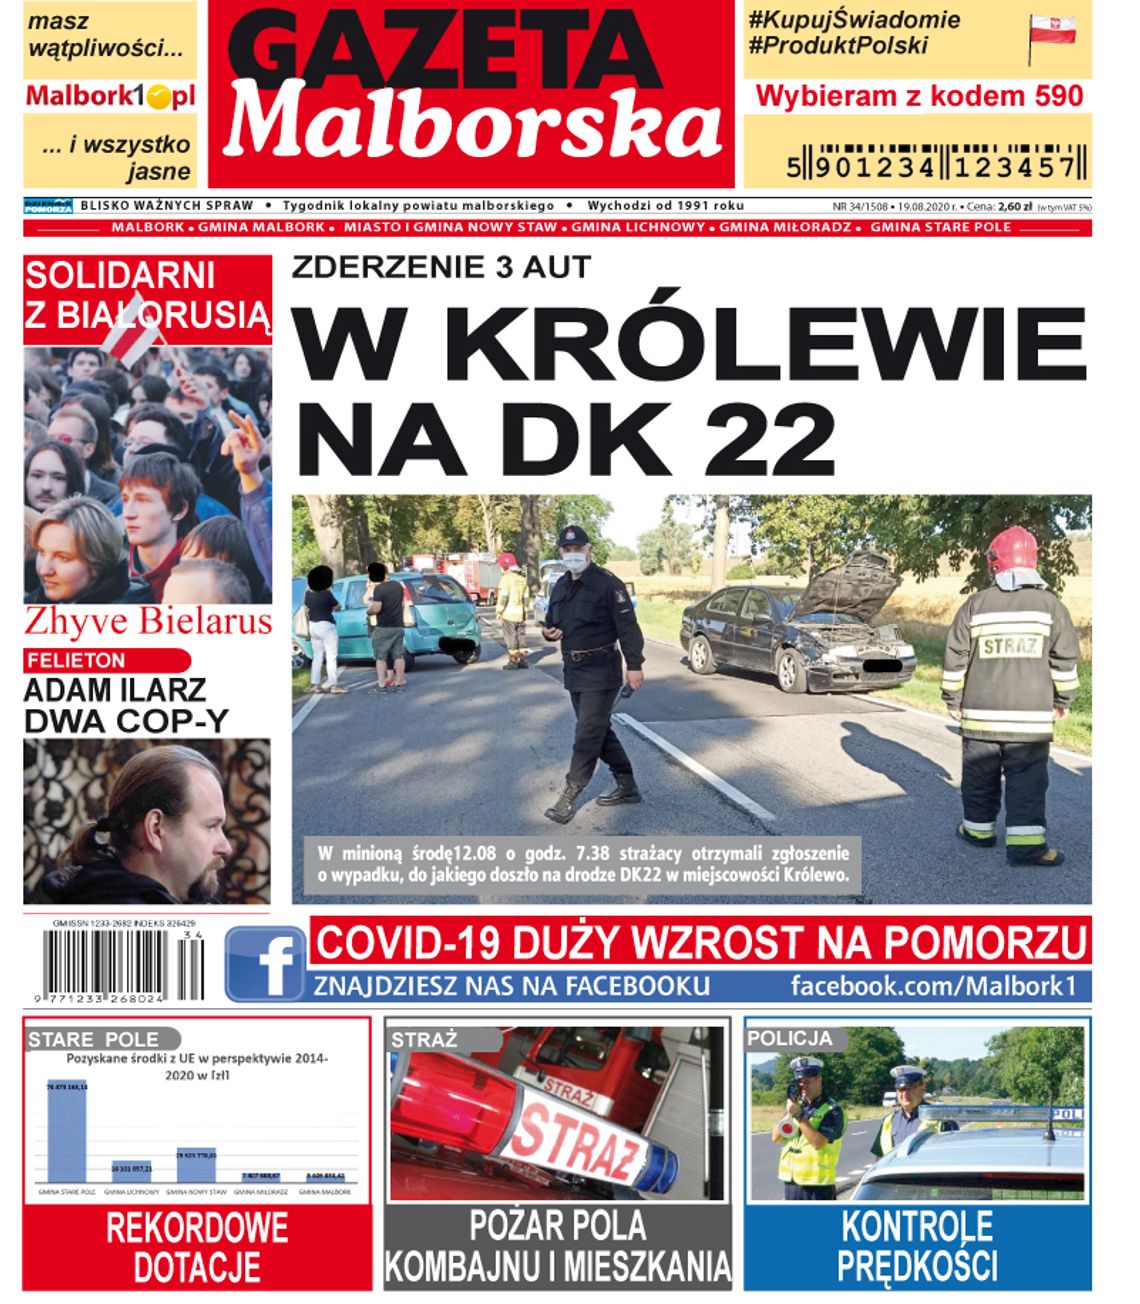 Najświeższe wiadomości z Malborka i okolic!!! Nowy numer Gazety Malborskiej już sprzedaży!!! A w nim…